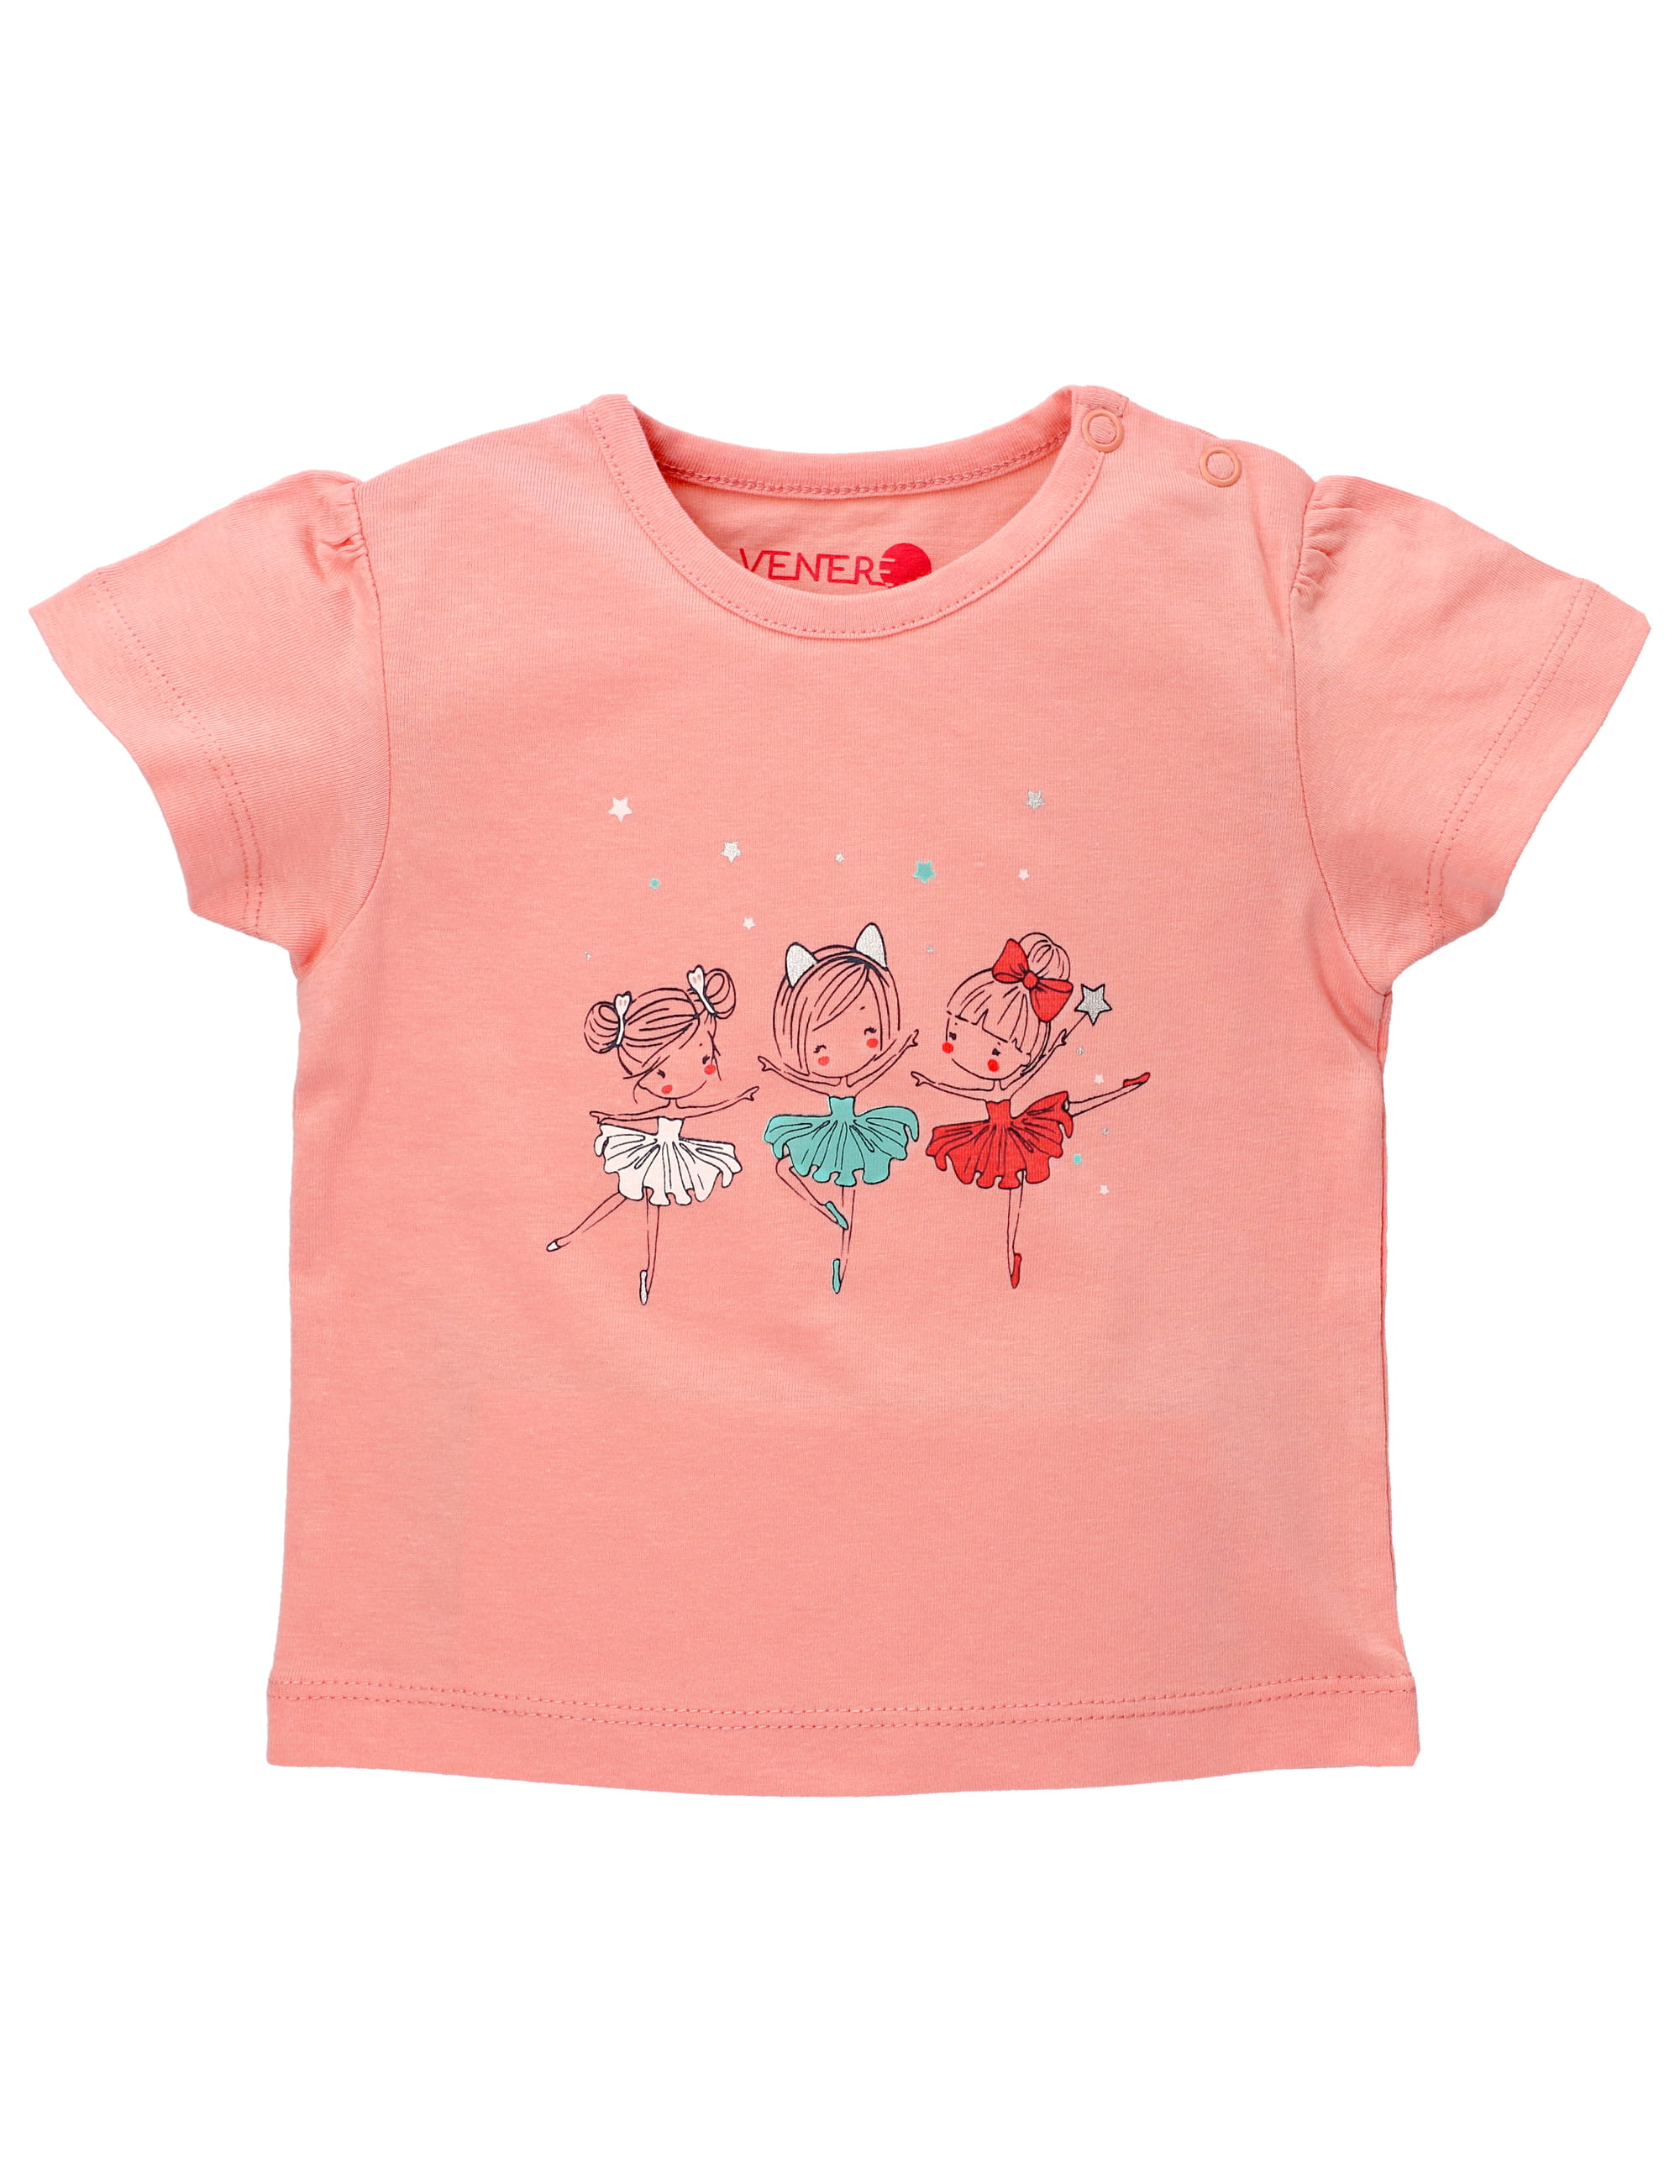 VENERE T-Shirt Tänzerinnen rosa